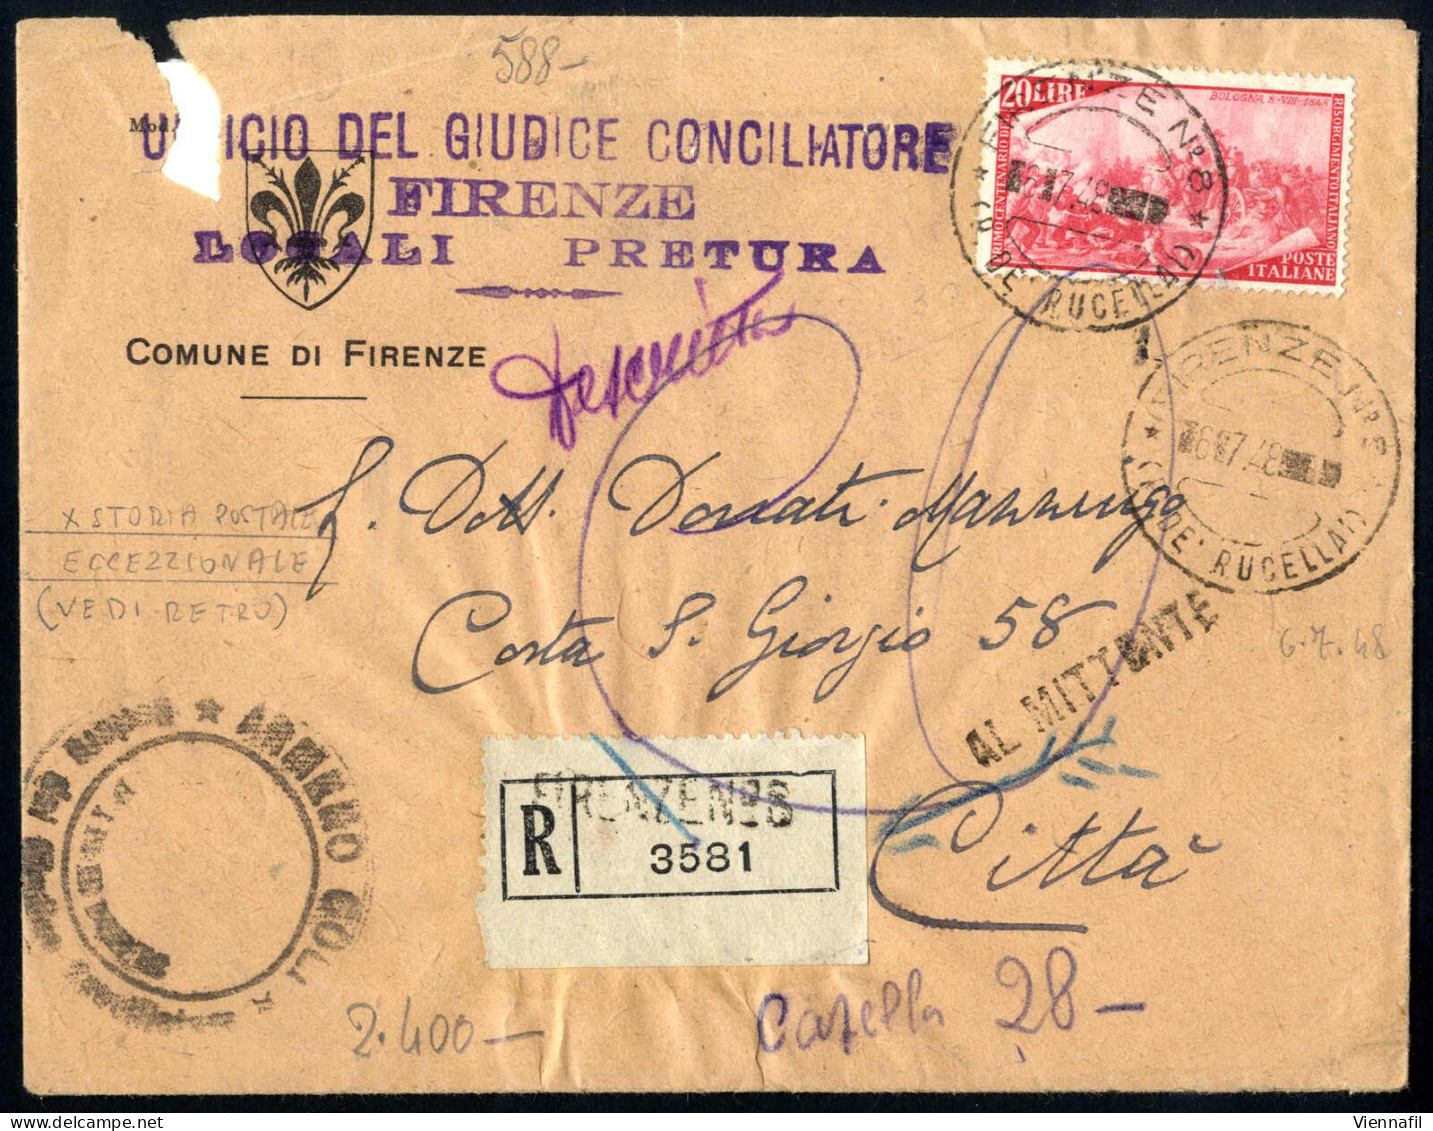 cover 1946/2000, splendida collezione di oltre 1500 documenti postali con usi singoli della repubblica in 19 album con m